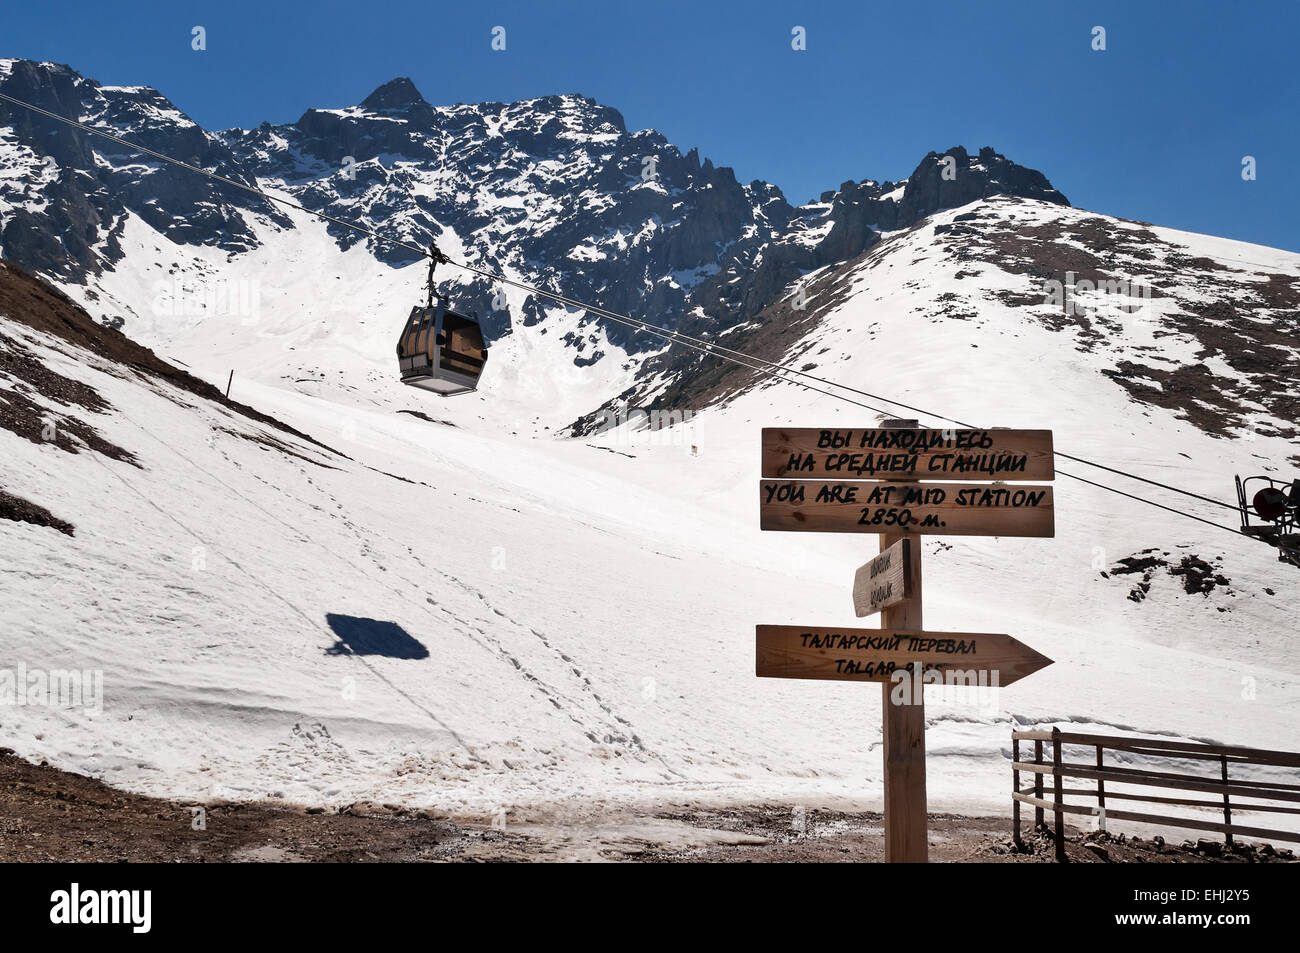 Shymbulak ski resort. Mid station of Ski lifts Stock Photo